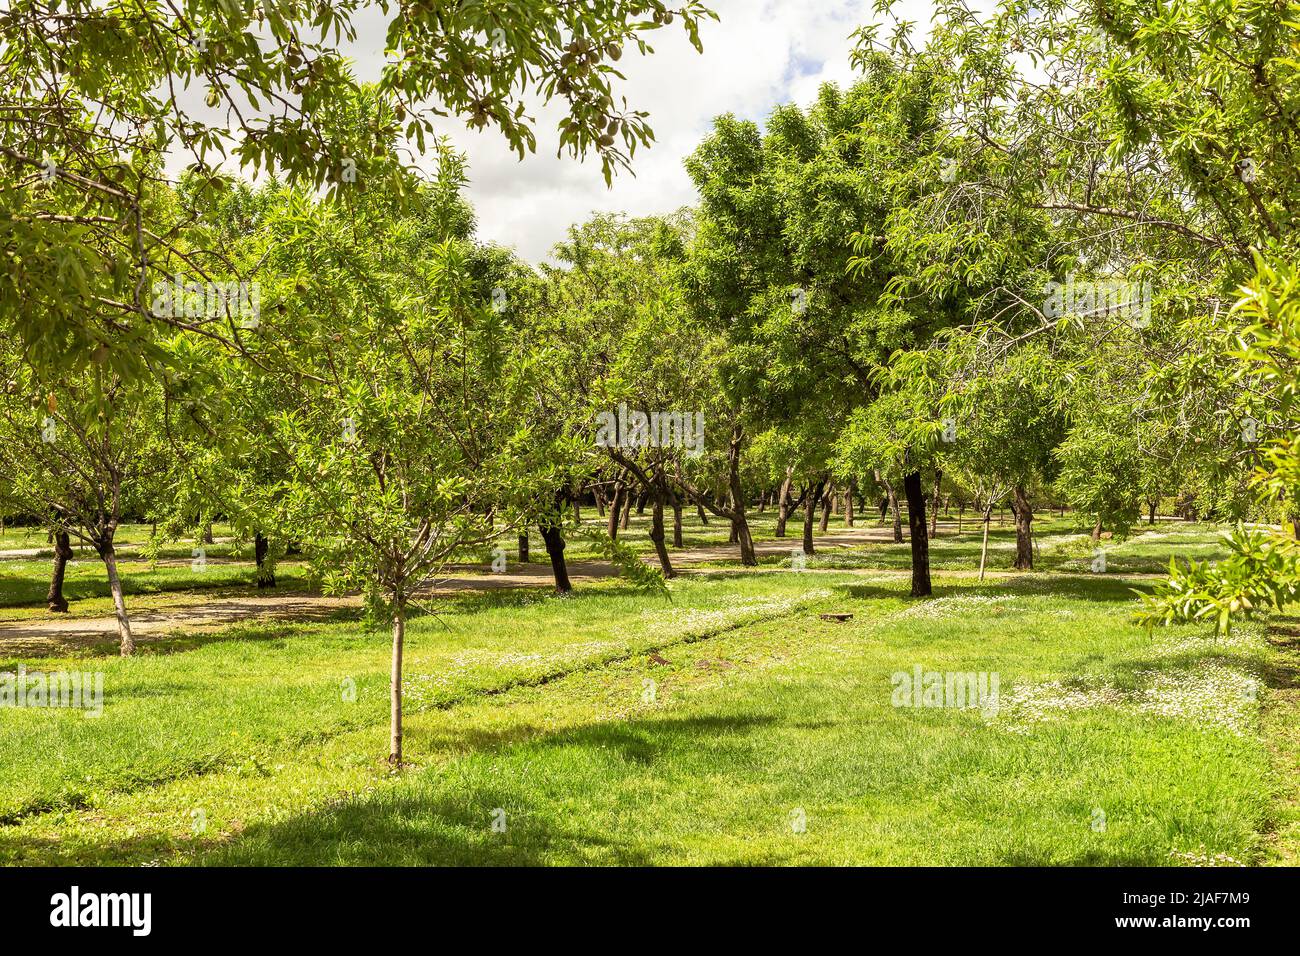 plantation d'arbres fruitiers sur des pelouses vertes Banque D'Images